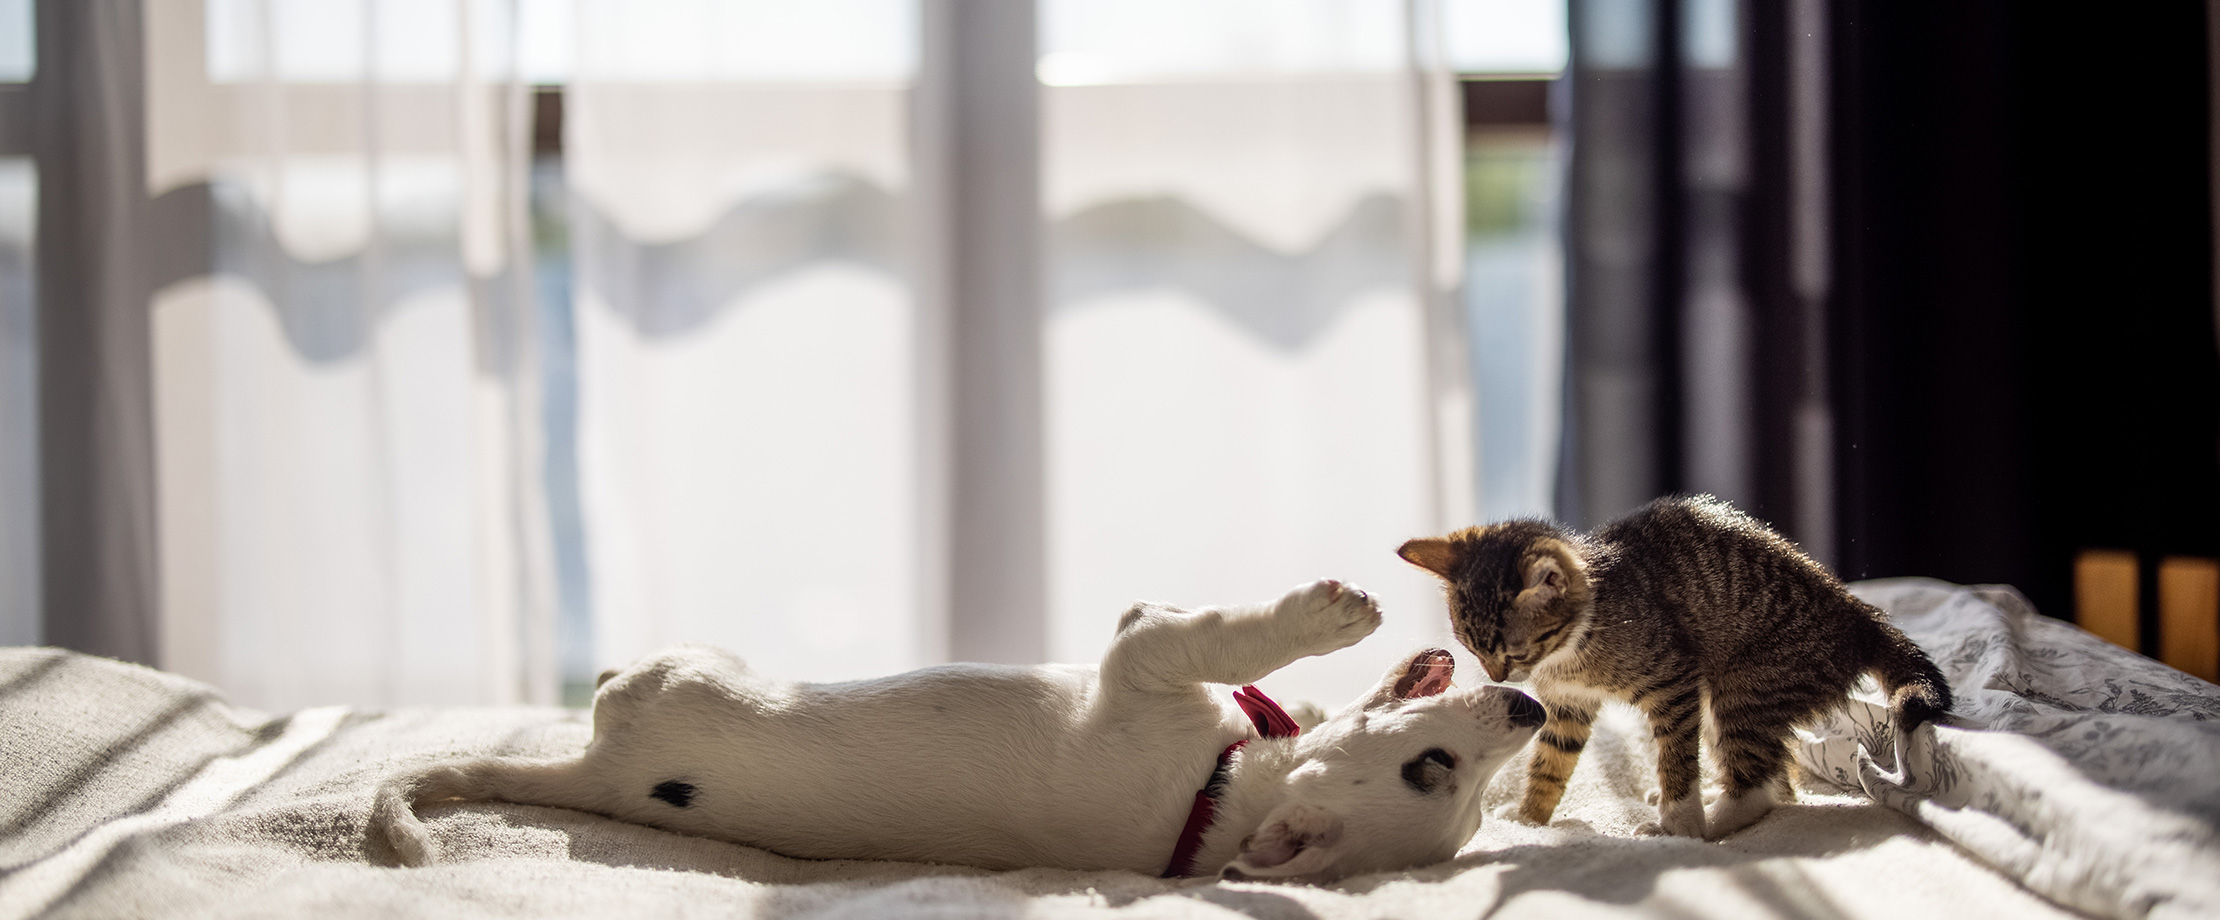 Ein kleiner weißer Hundewelpe spielt auf einem Bett mit einer kleinen braunen Katze. 